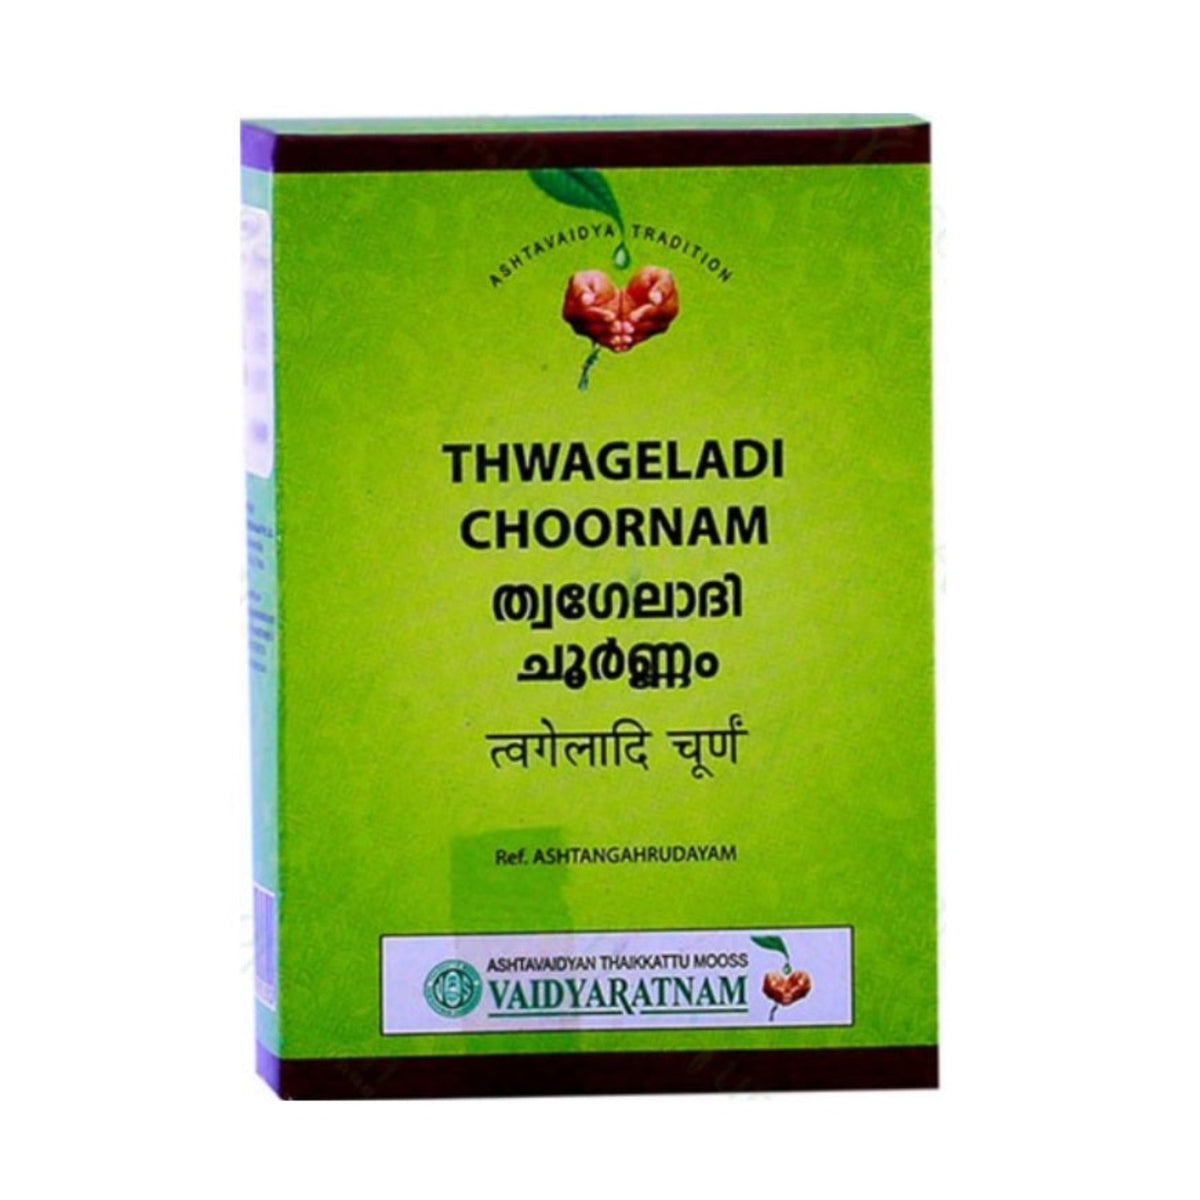 Vaidyaratnam Ayurvedic Thwageladi Choornam Powder 50g